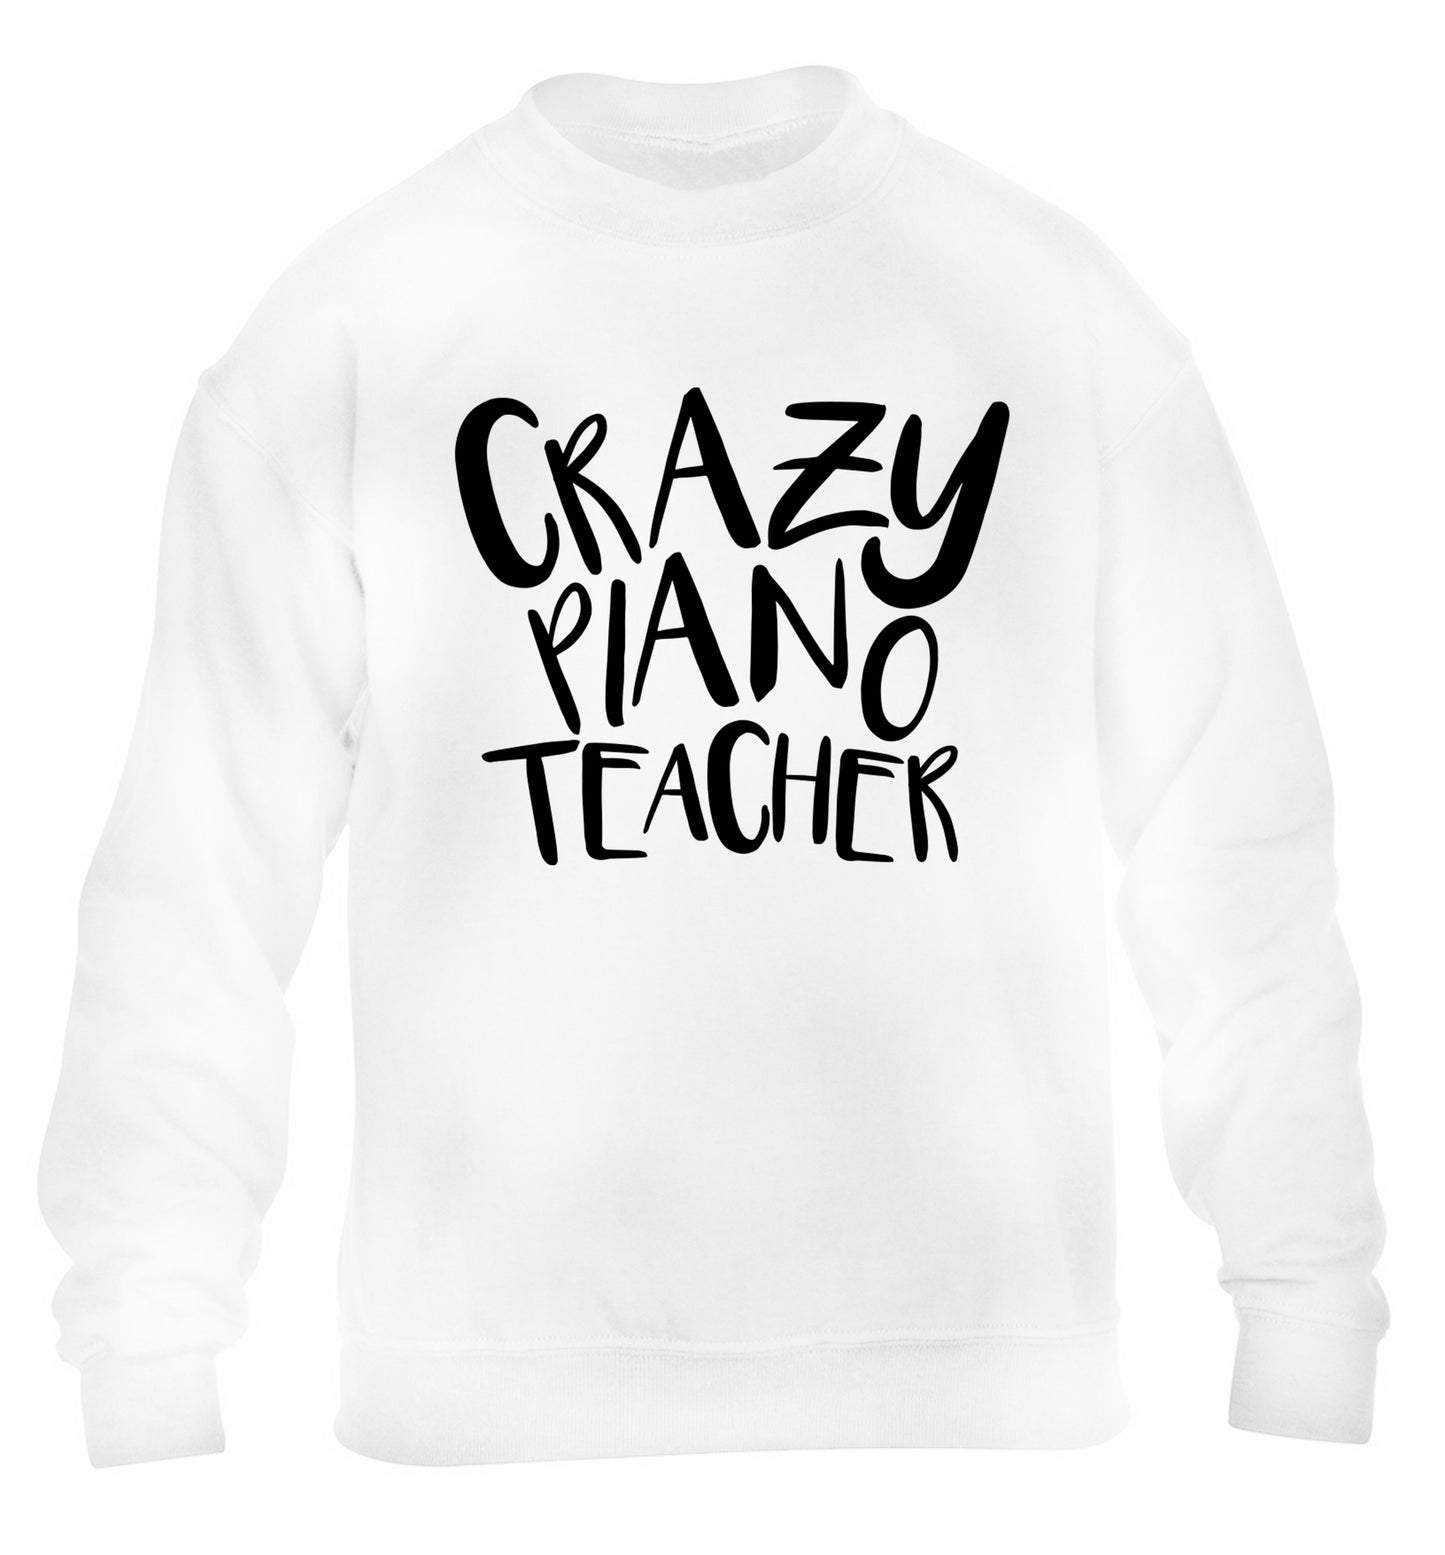 Crazy piano teacher children's white sweater 12-13 Years